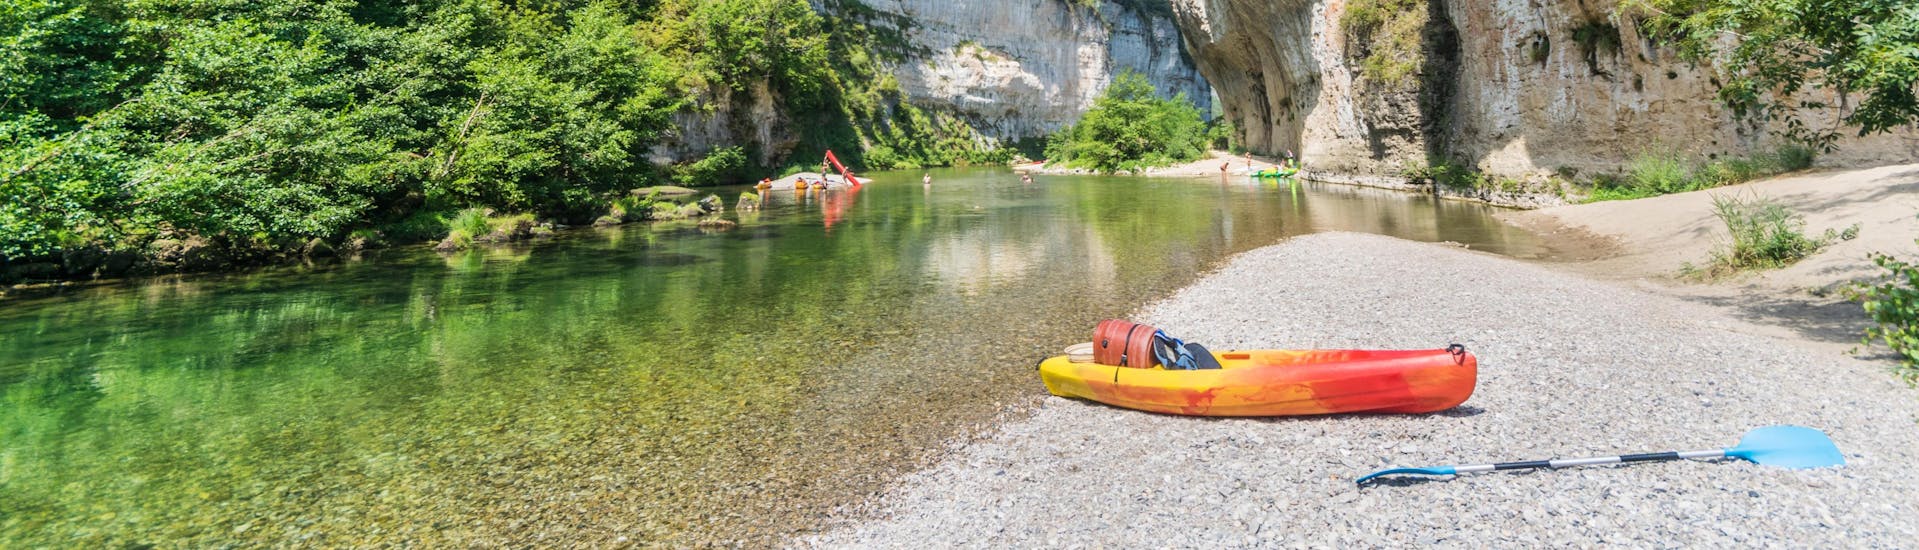 Un canoë est posé sur l'une des plages naturelles des Gorges du Tarn, l'un des lieux de prédilection pour le canoë en France.